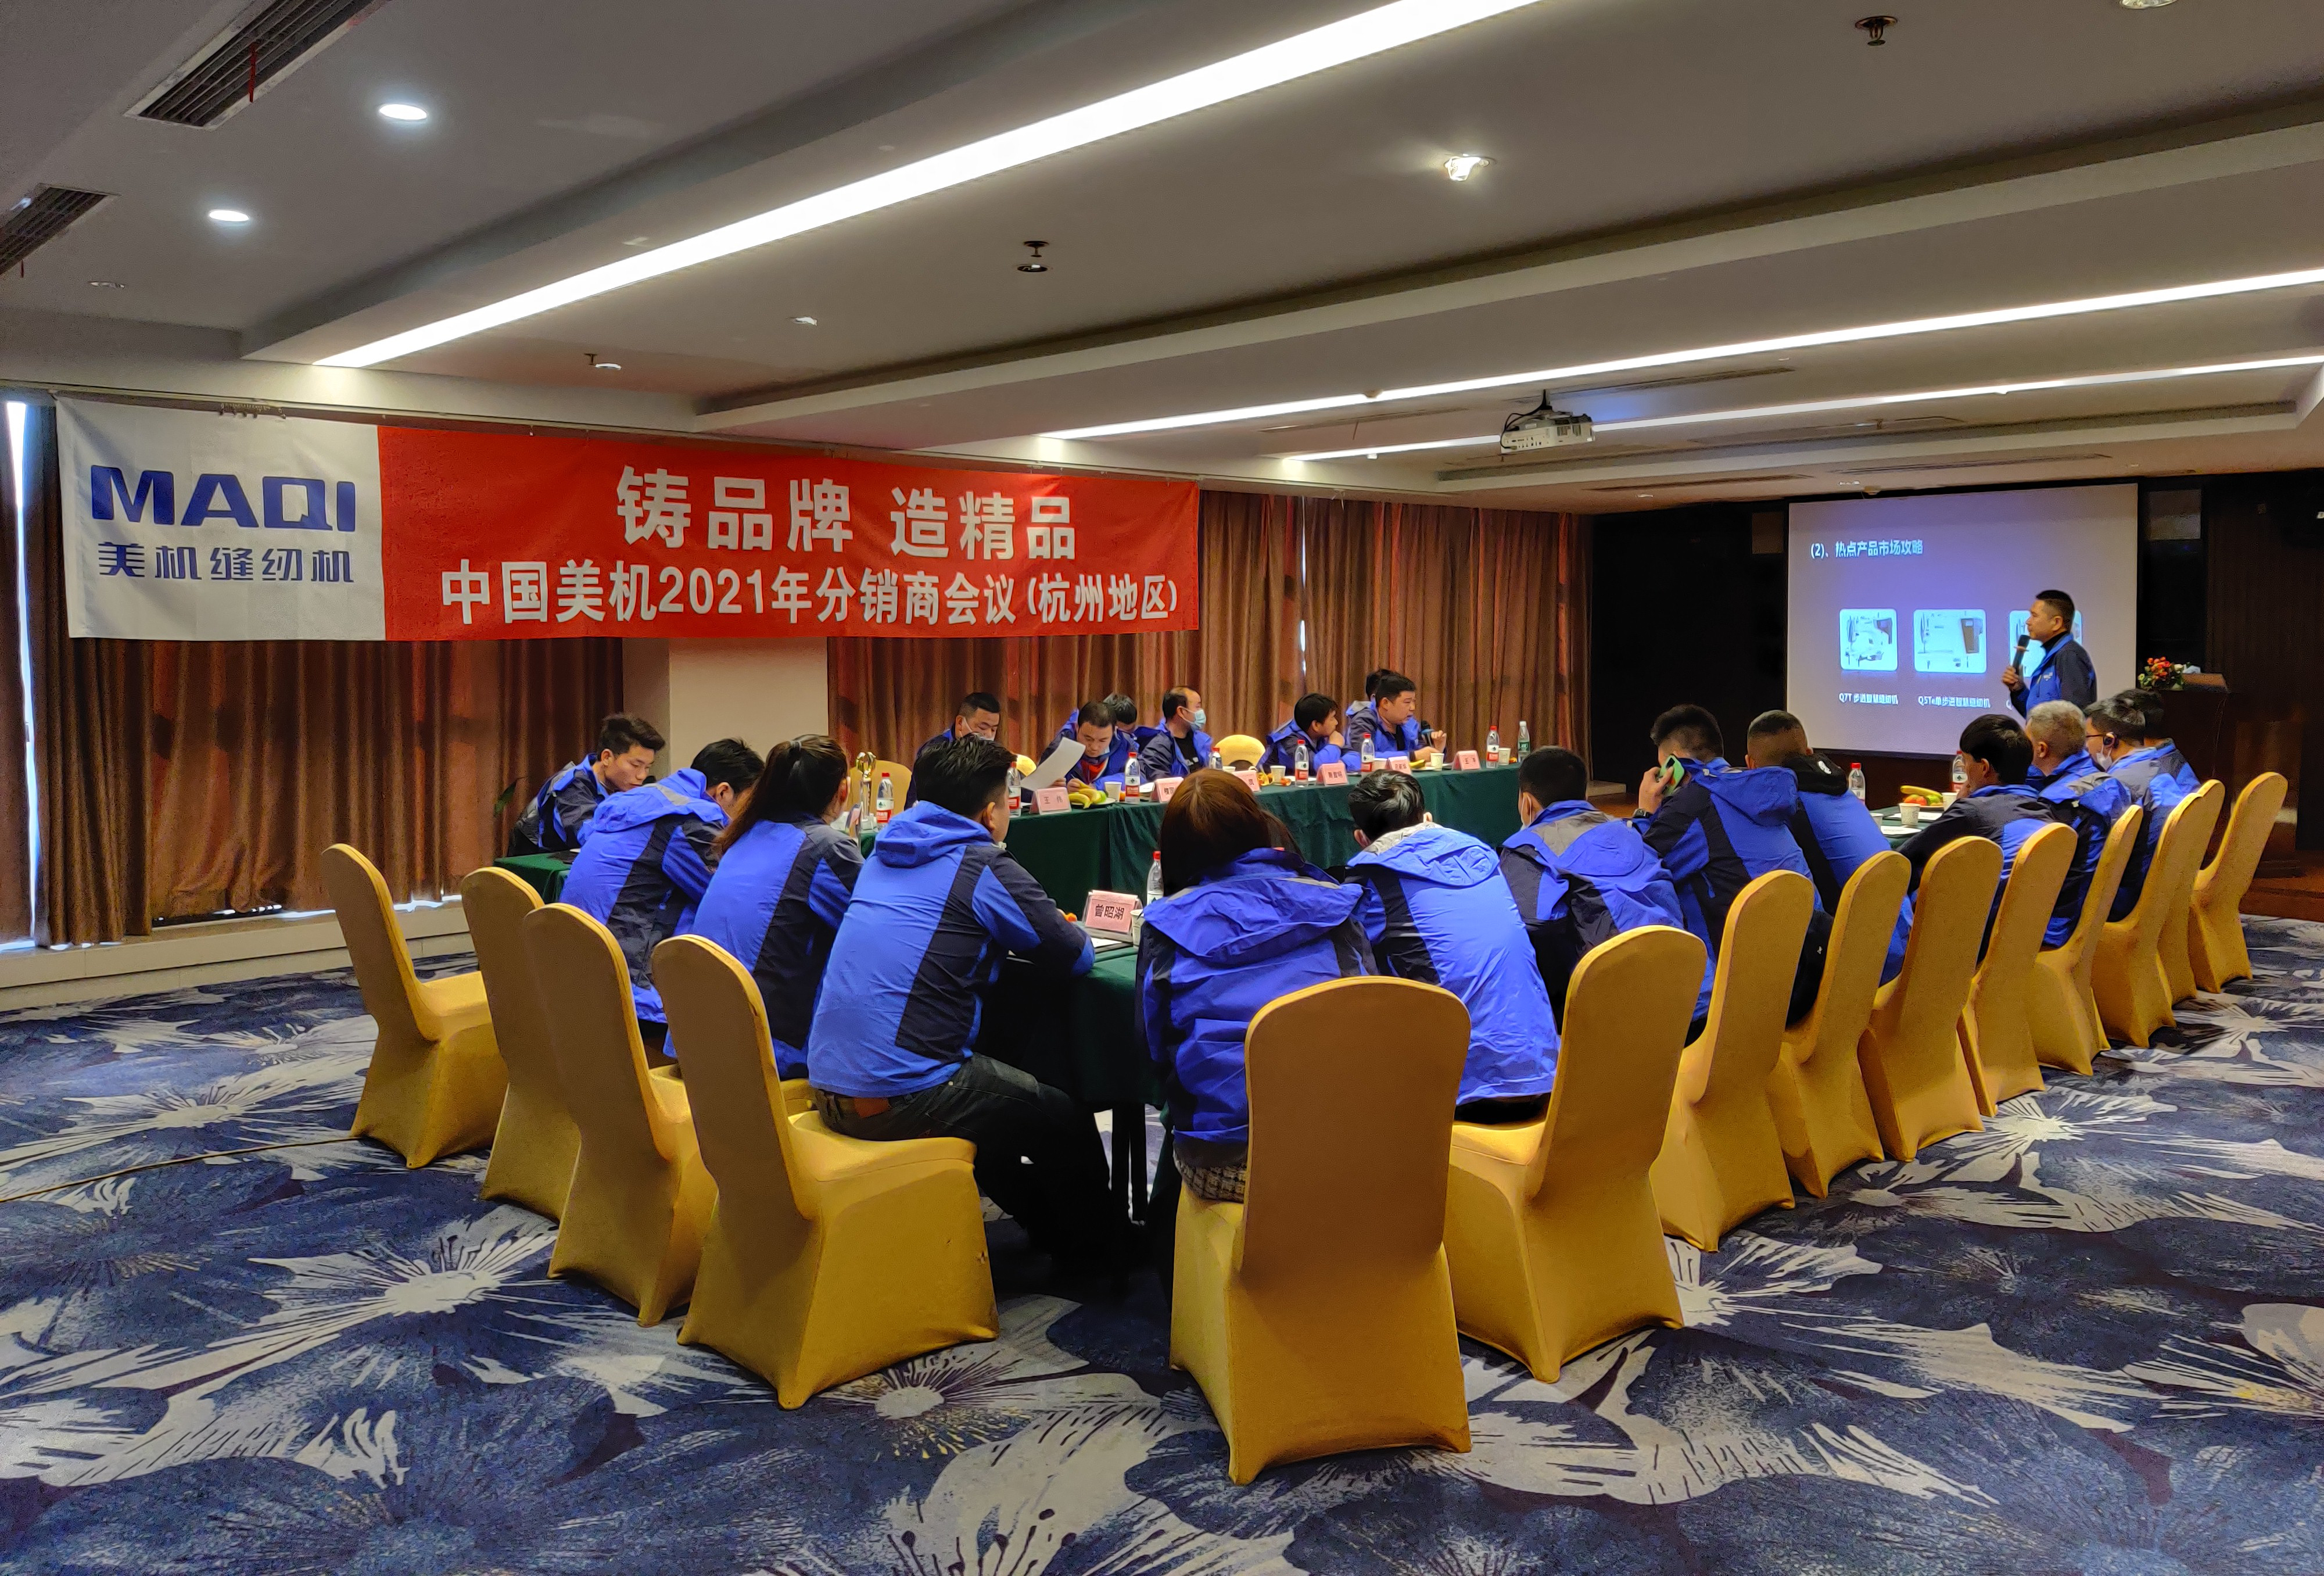 中国LDSports乐动体育2021年分销商会议召开